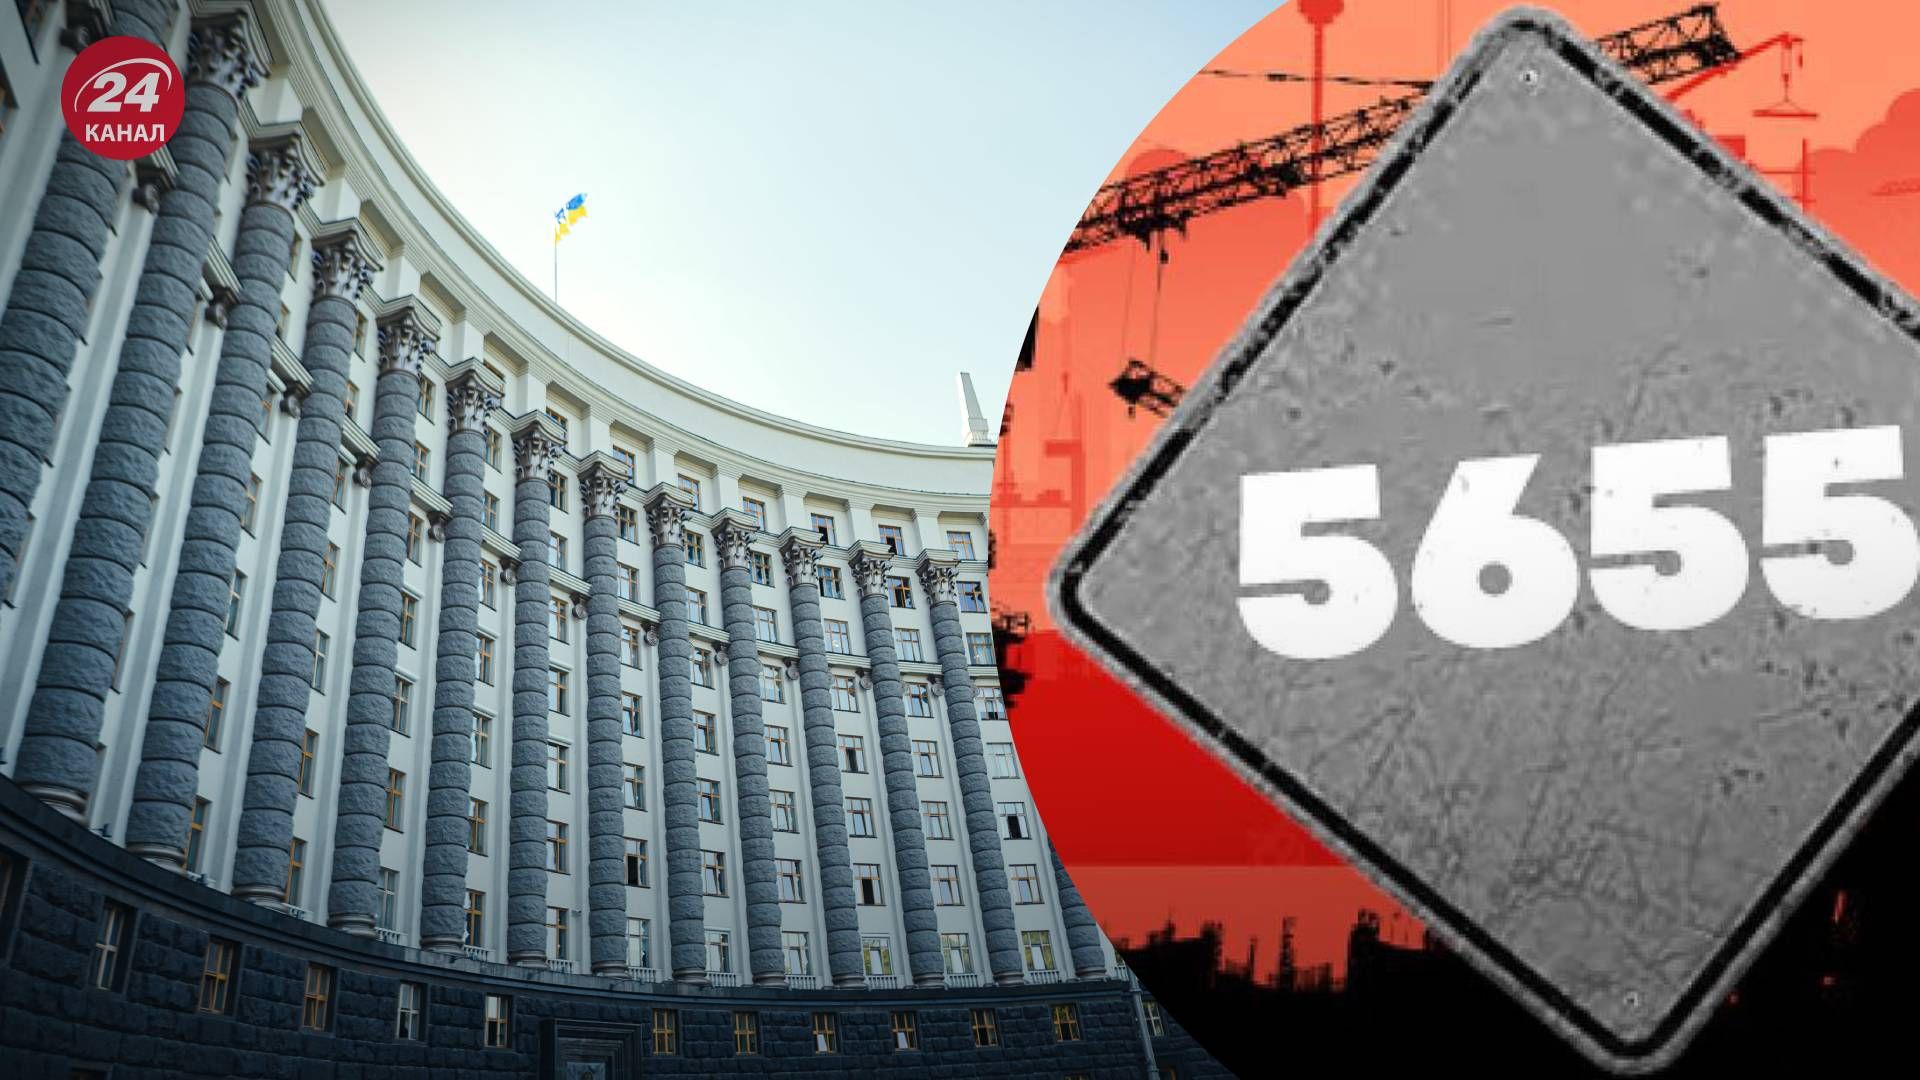 Скандальное постановление-клон градостроительной "реформы" 5655 готовят на рассмотрение правительства - 24 Канал